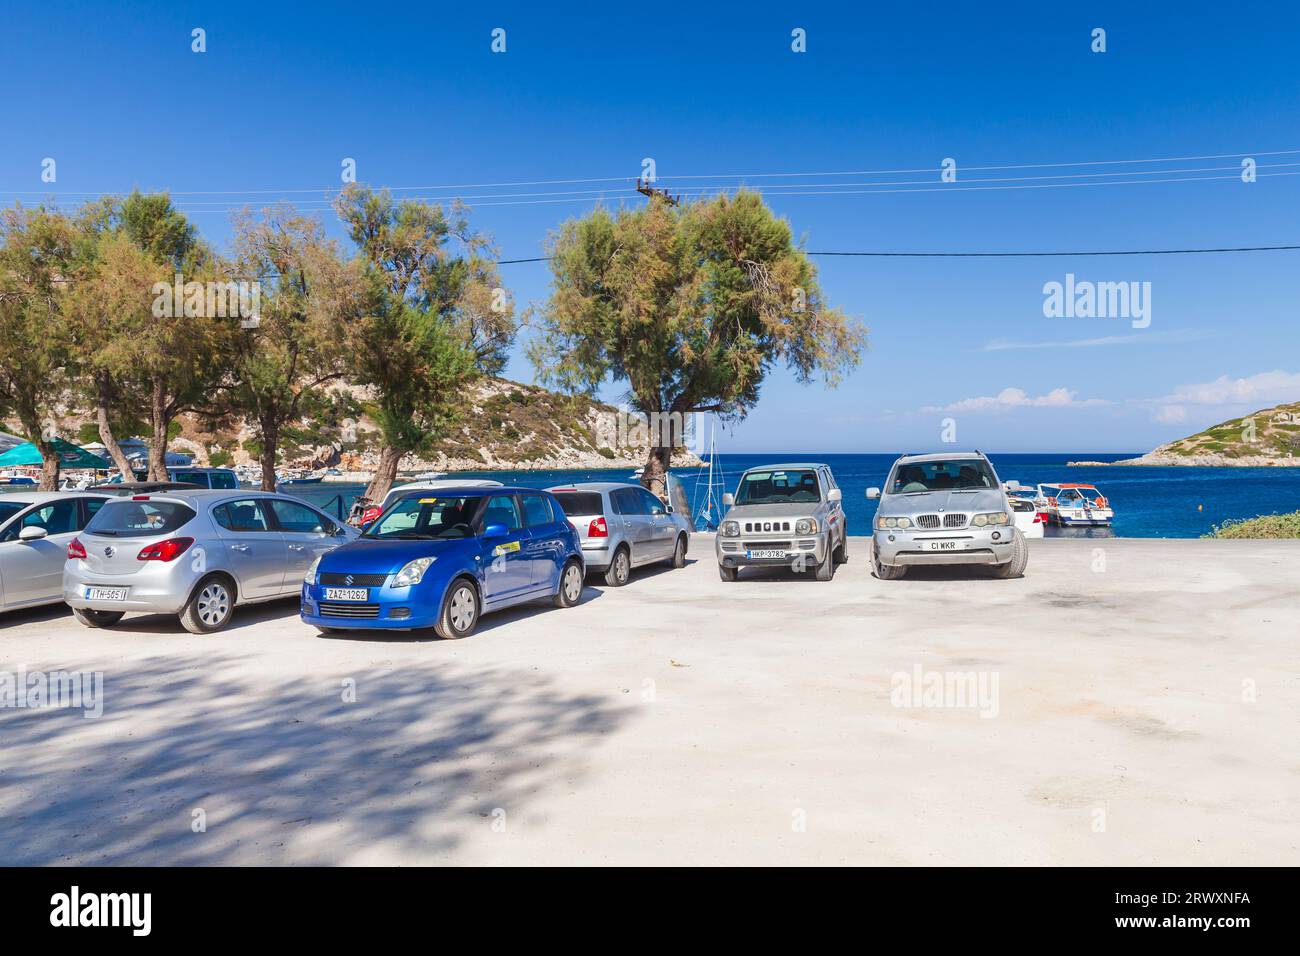 Zakynthos, Griechenland - 20. August 2016: Autos werden auf dem Küstenparkplatz von Agios Nikolaos geparkt. Beliebtes touristisches Reiseziel für Sommerurlaube, ver Stockfoto